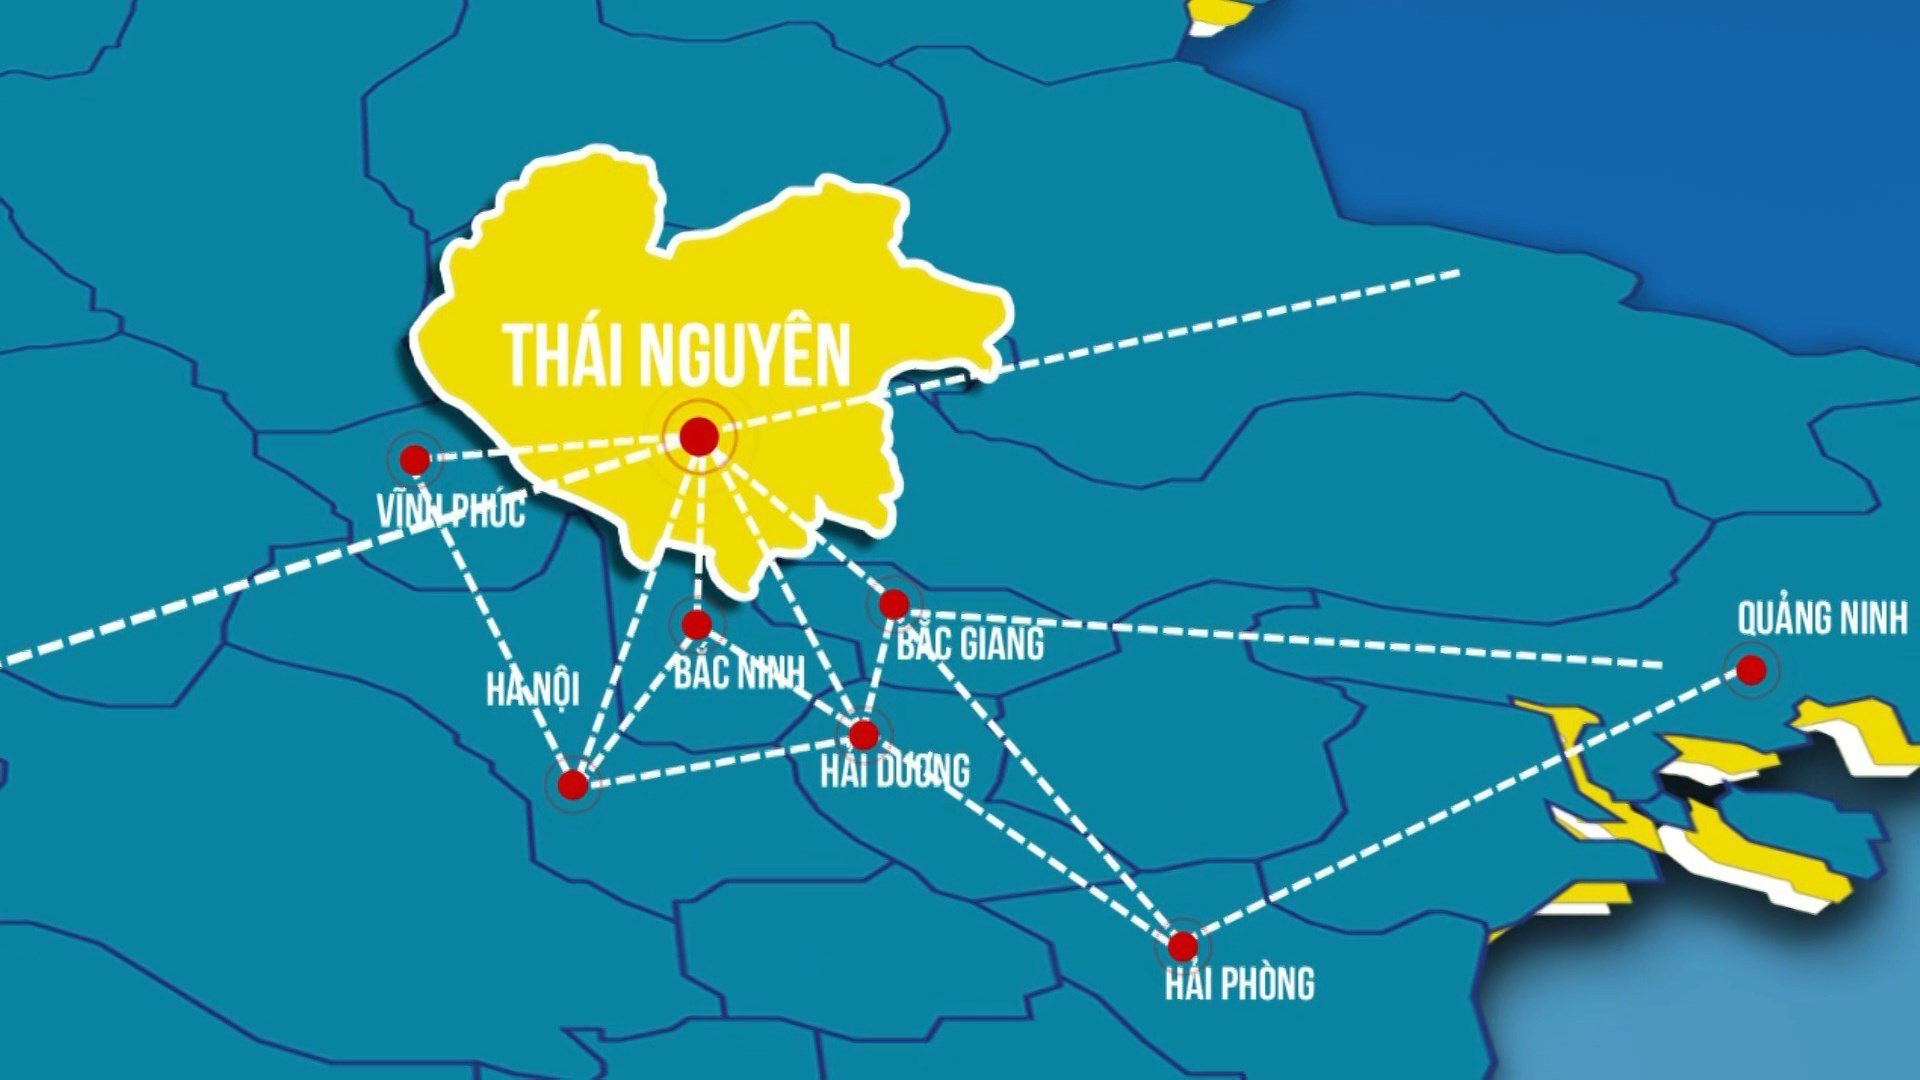 Hiện thực hóa quy hoạch tỉnh: Thái Nguyên thông qua nhiệm vụ quy hoạch thêm gần 2.000 ha đất công nghiệp